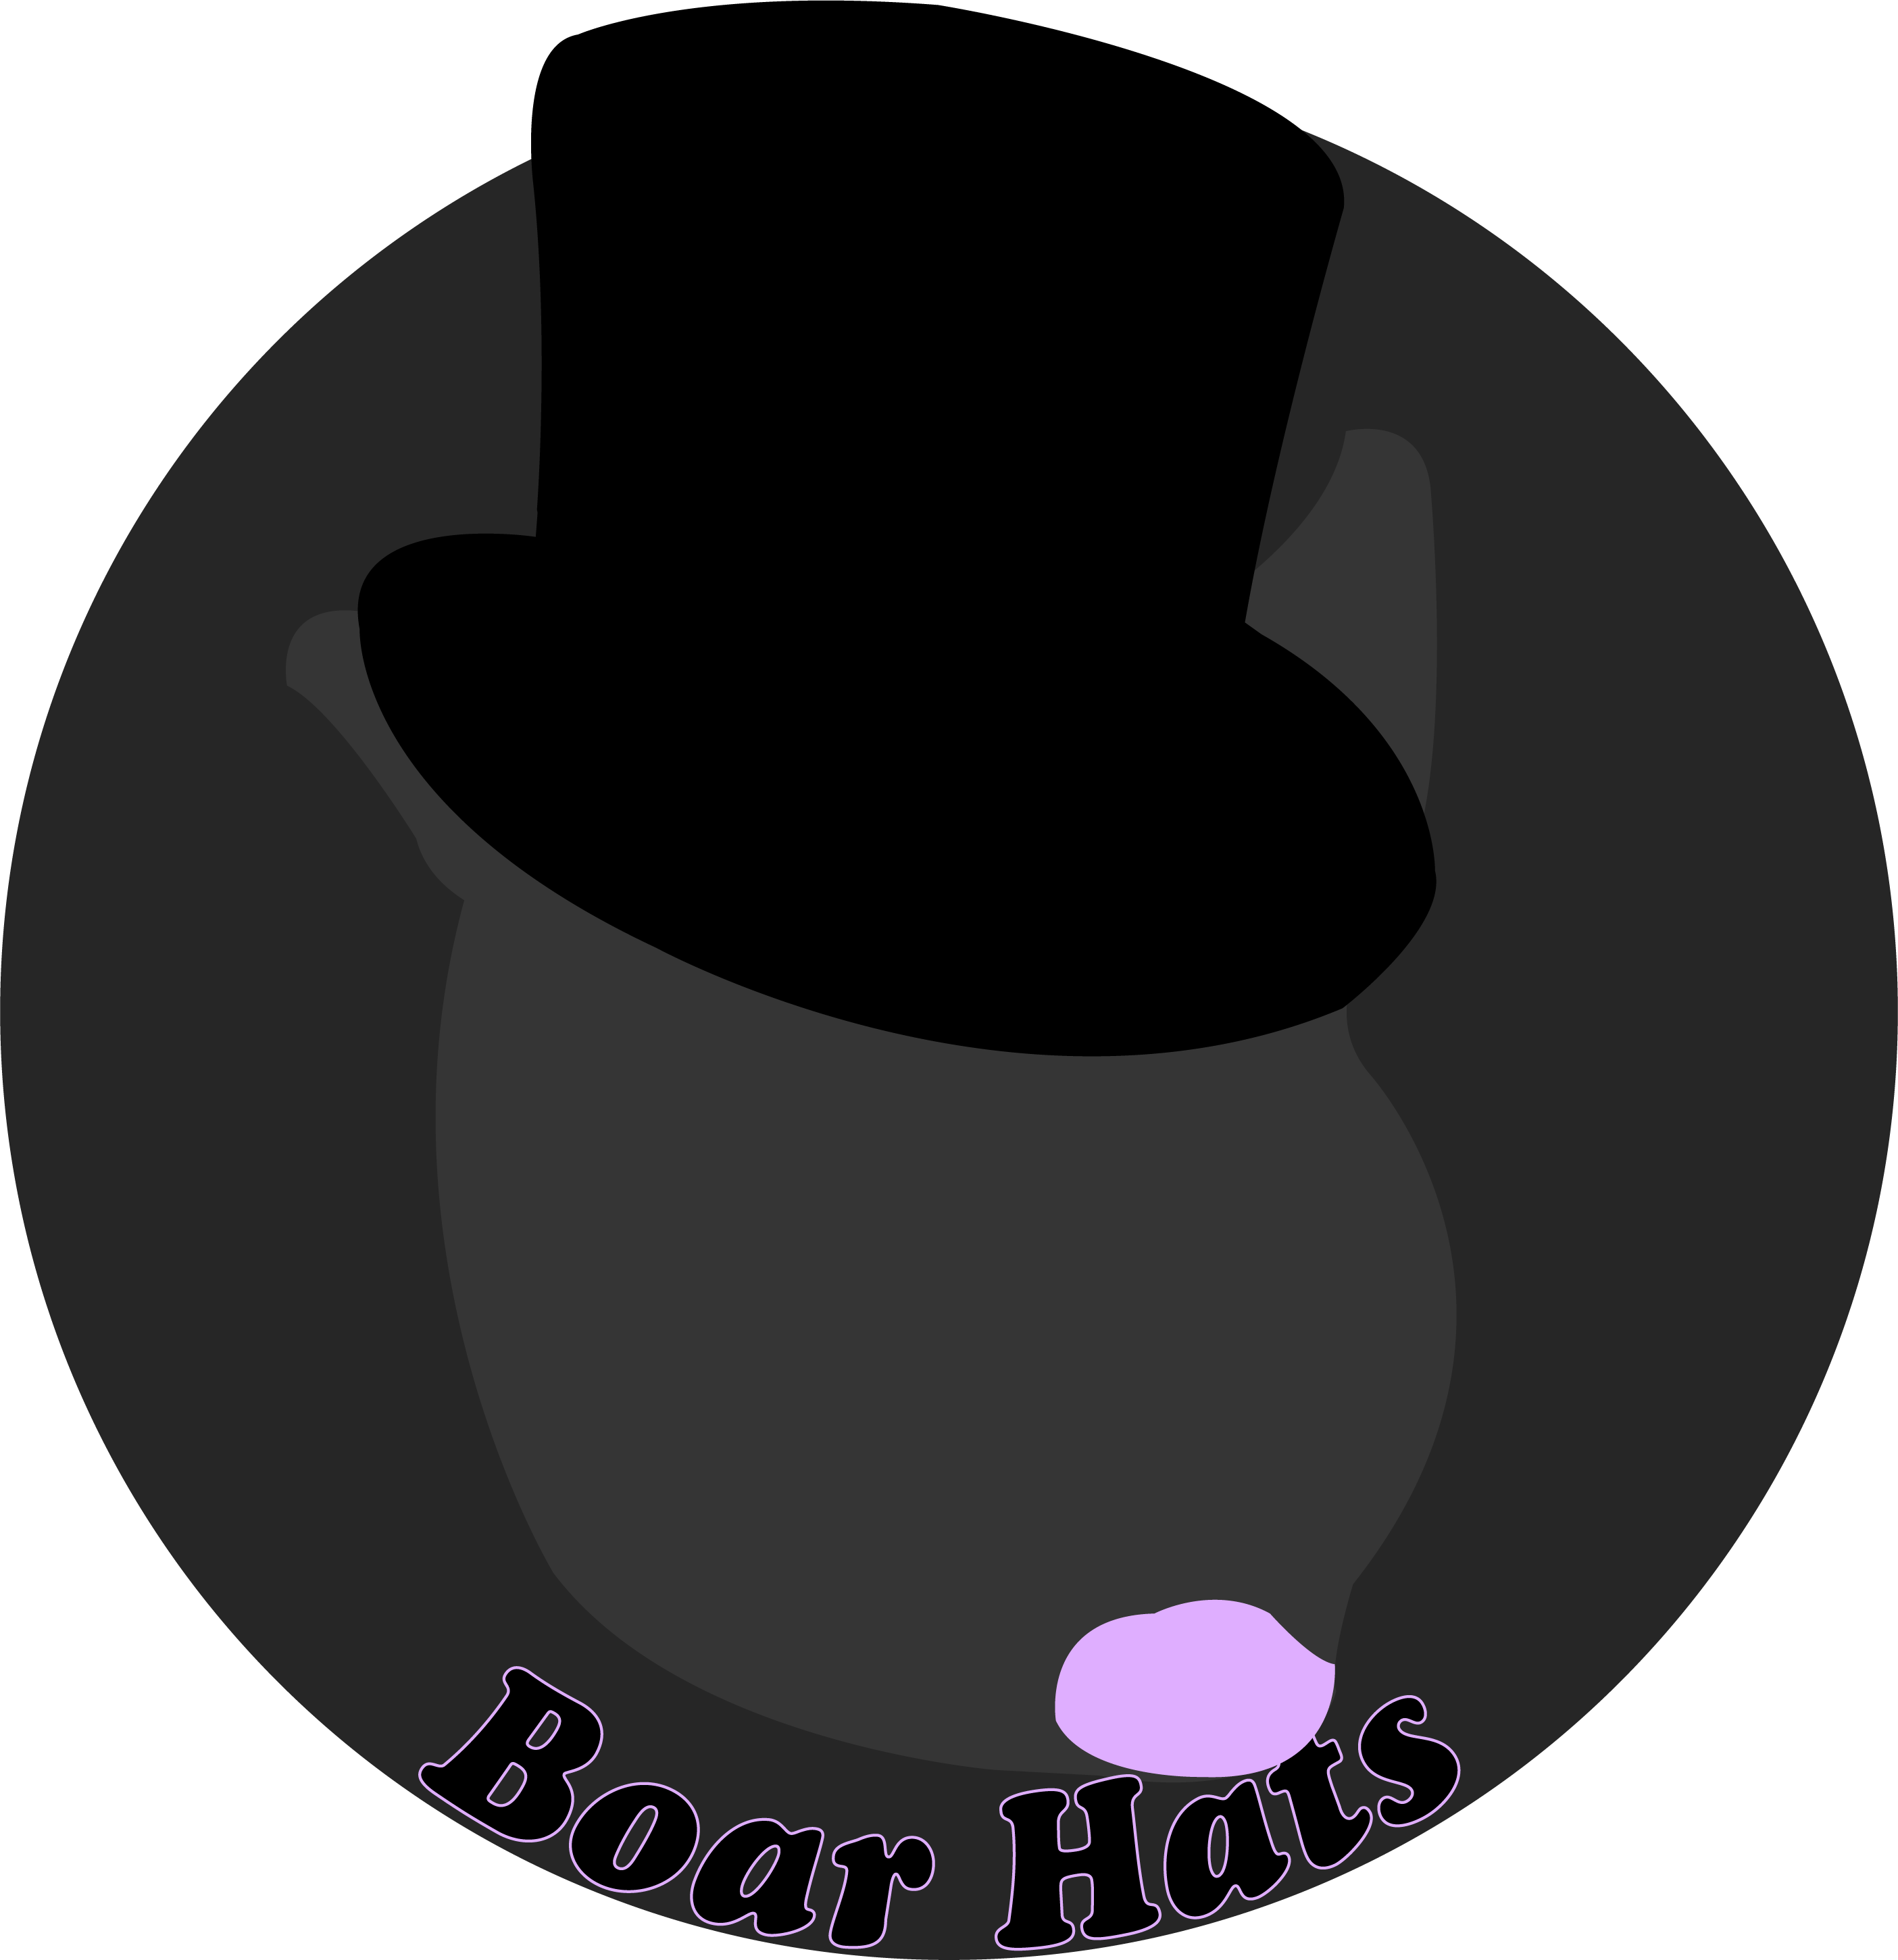 Boar Hats